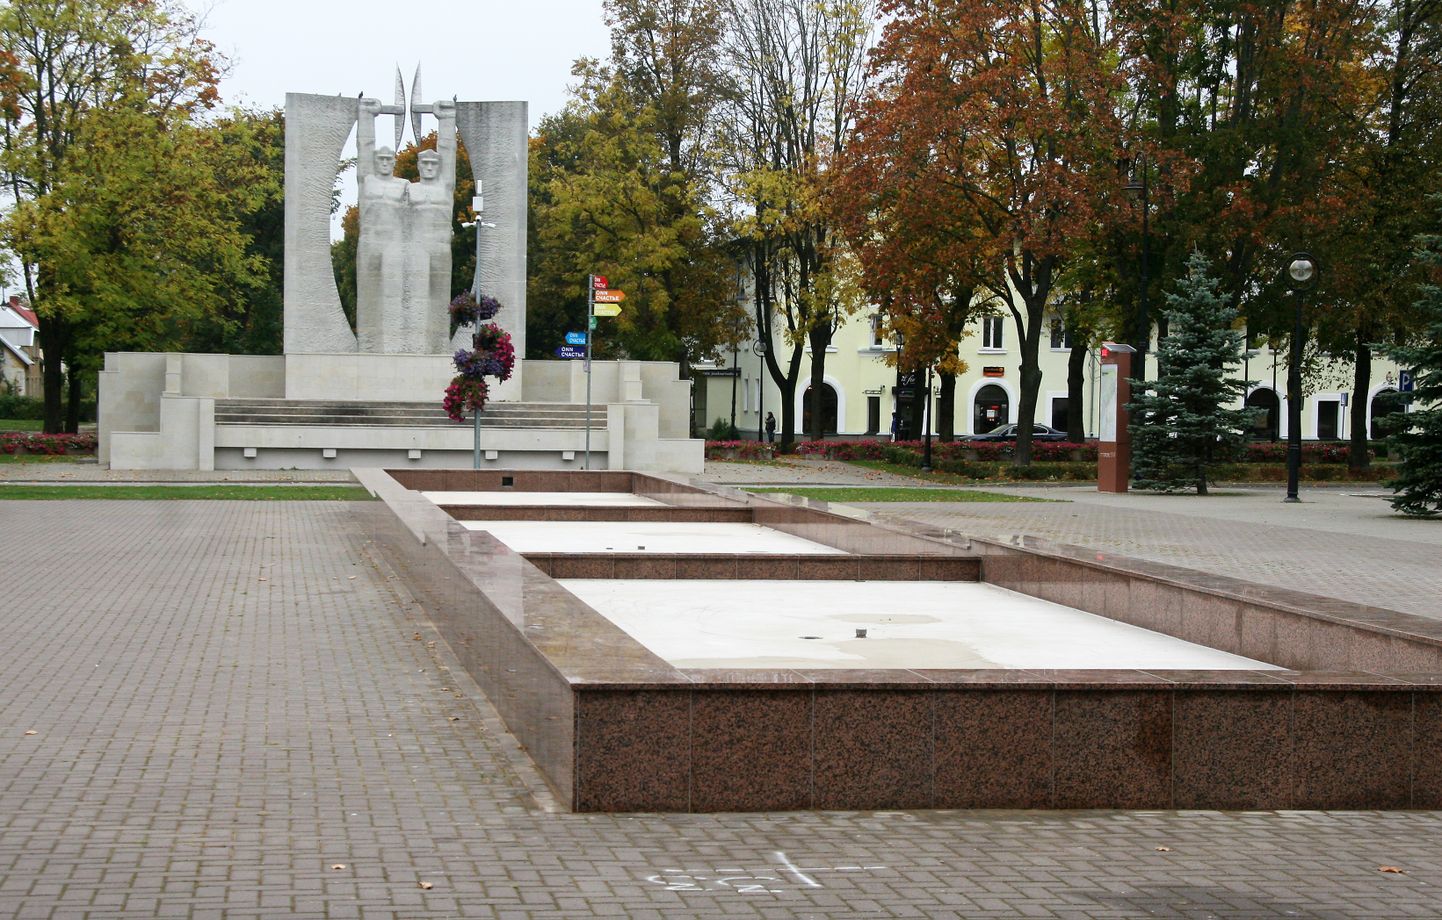 Памятник "Слава труду" и каскадный фонтан за лето заметно похорошели.